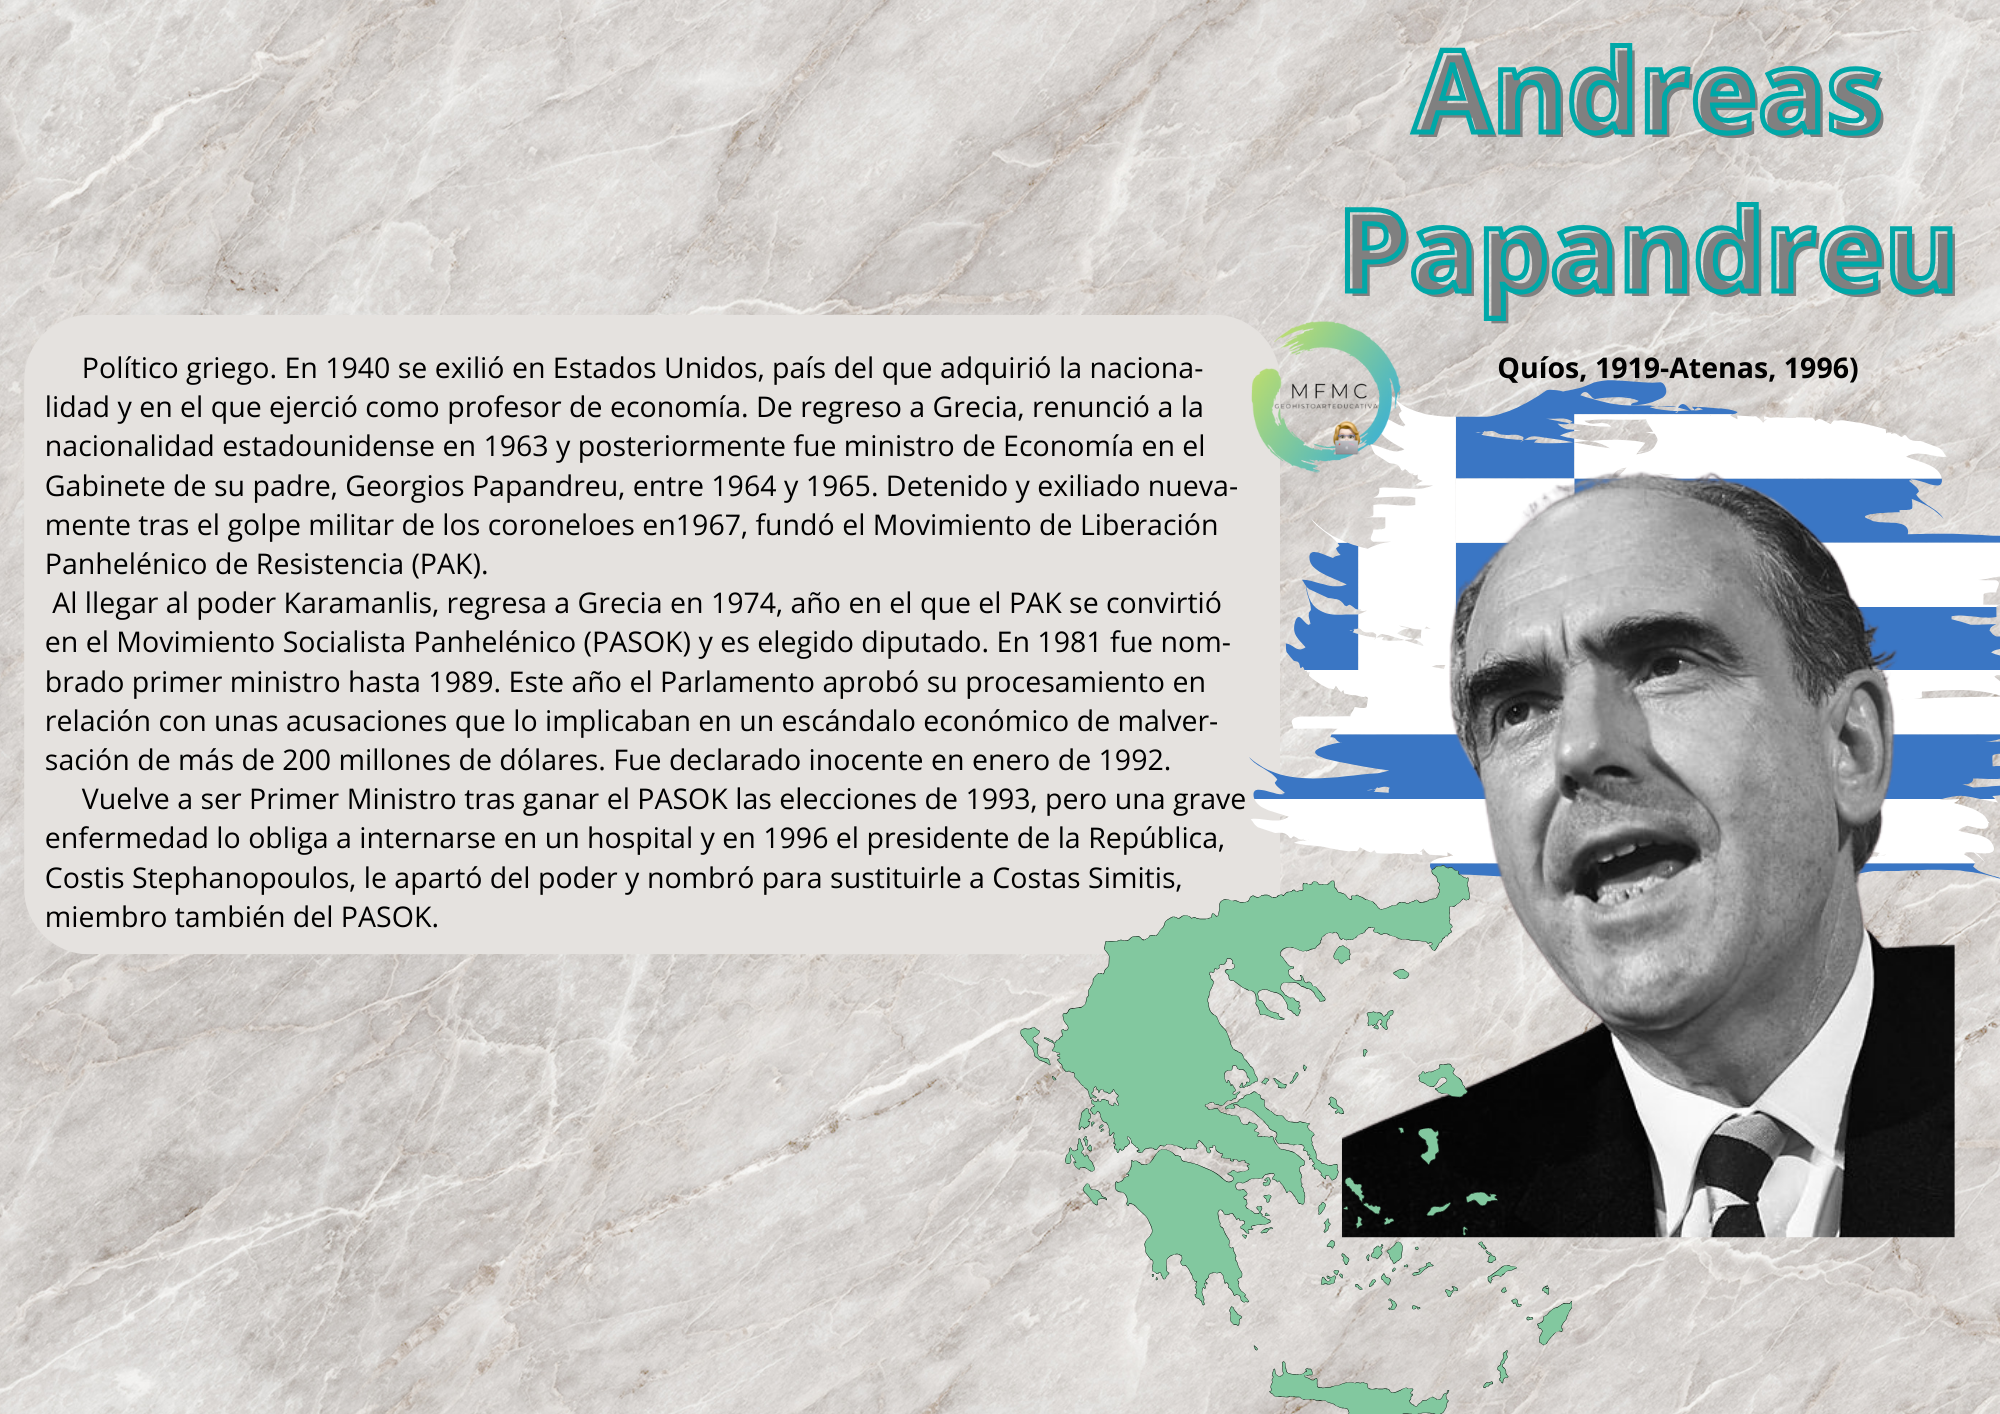 Andreas Papandreu